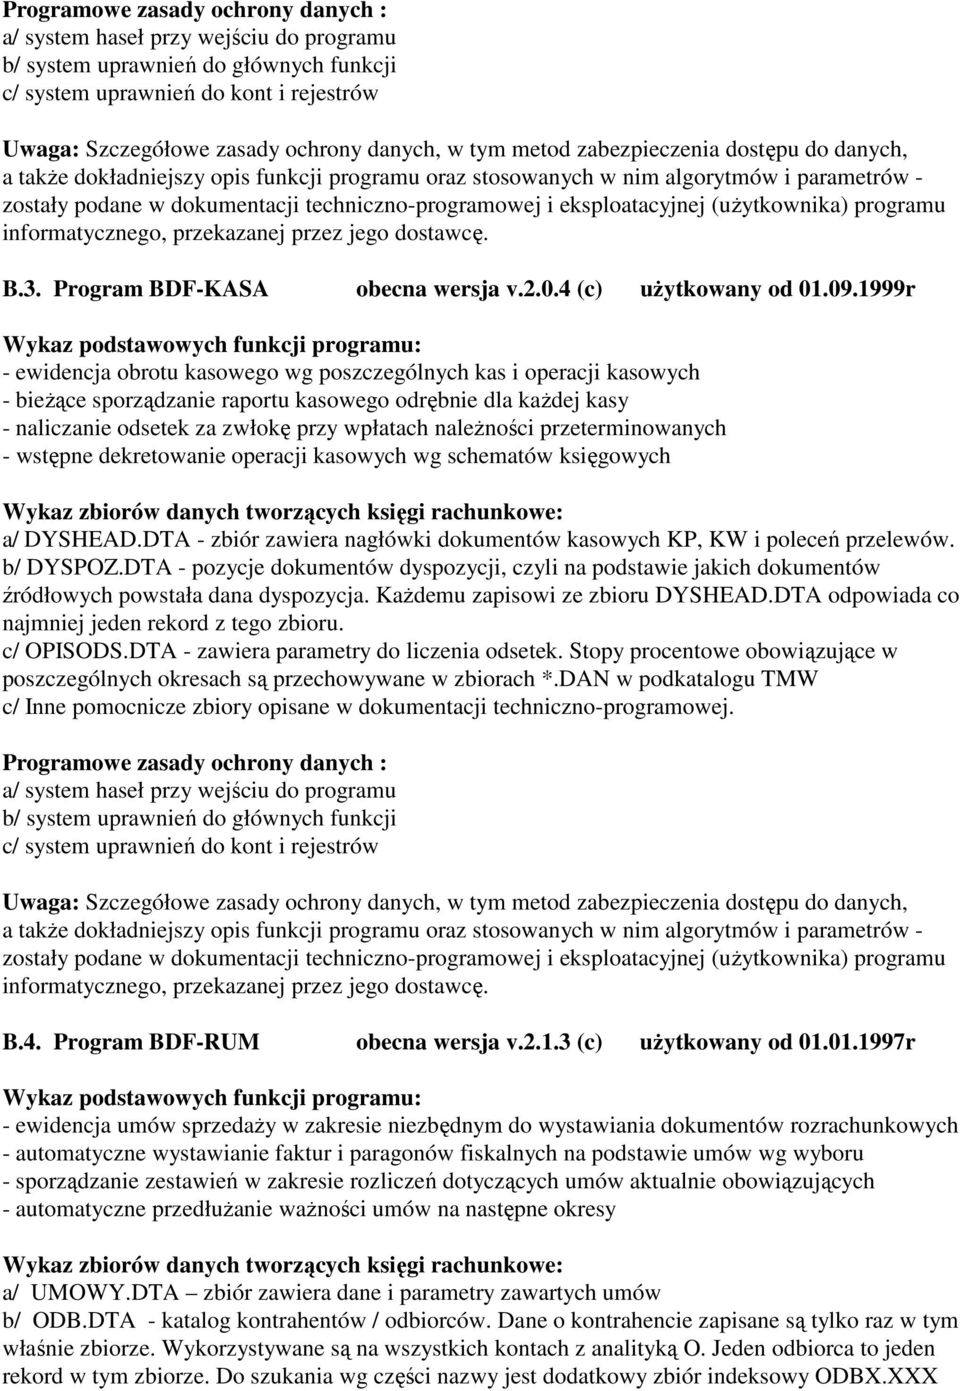 eksploatacyjnej (uŝytkownika) programu informatycznego, przekazanej przez jego dostawcę. B.3. Program BDF-KASA obecna wersja v.2.0.4 (c) uŝytkowany od 01.09.